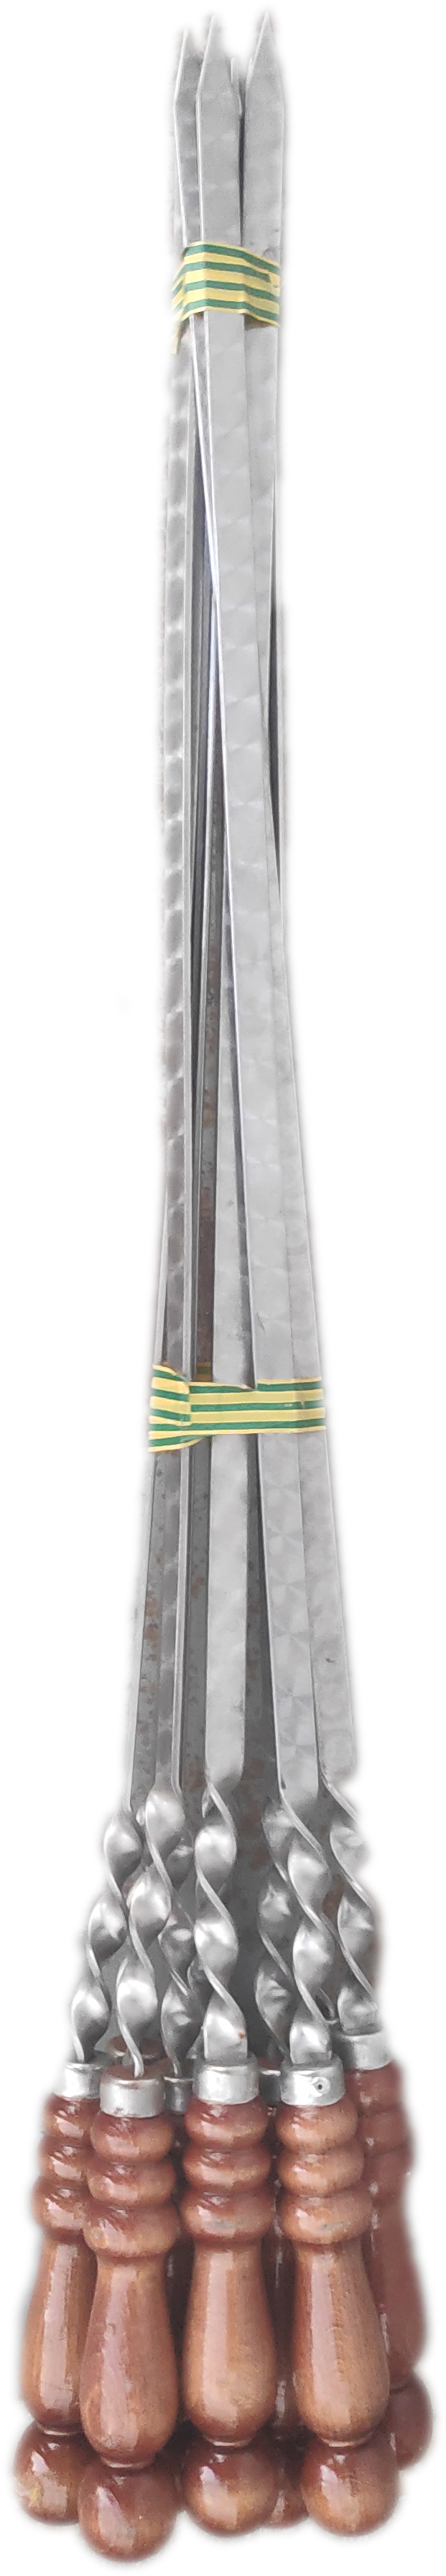 Шампур нержавейка с деревянной ручкой 60 см. (10)